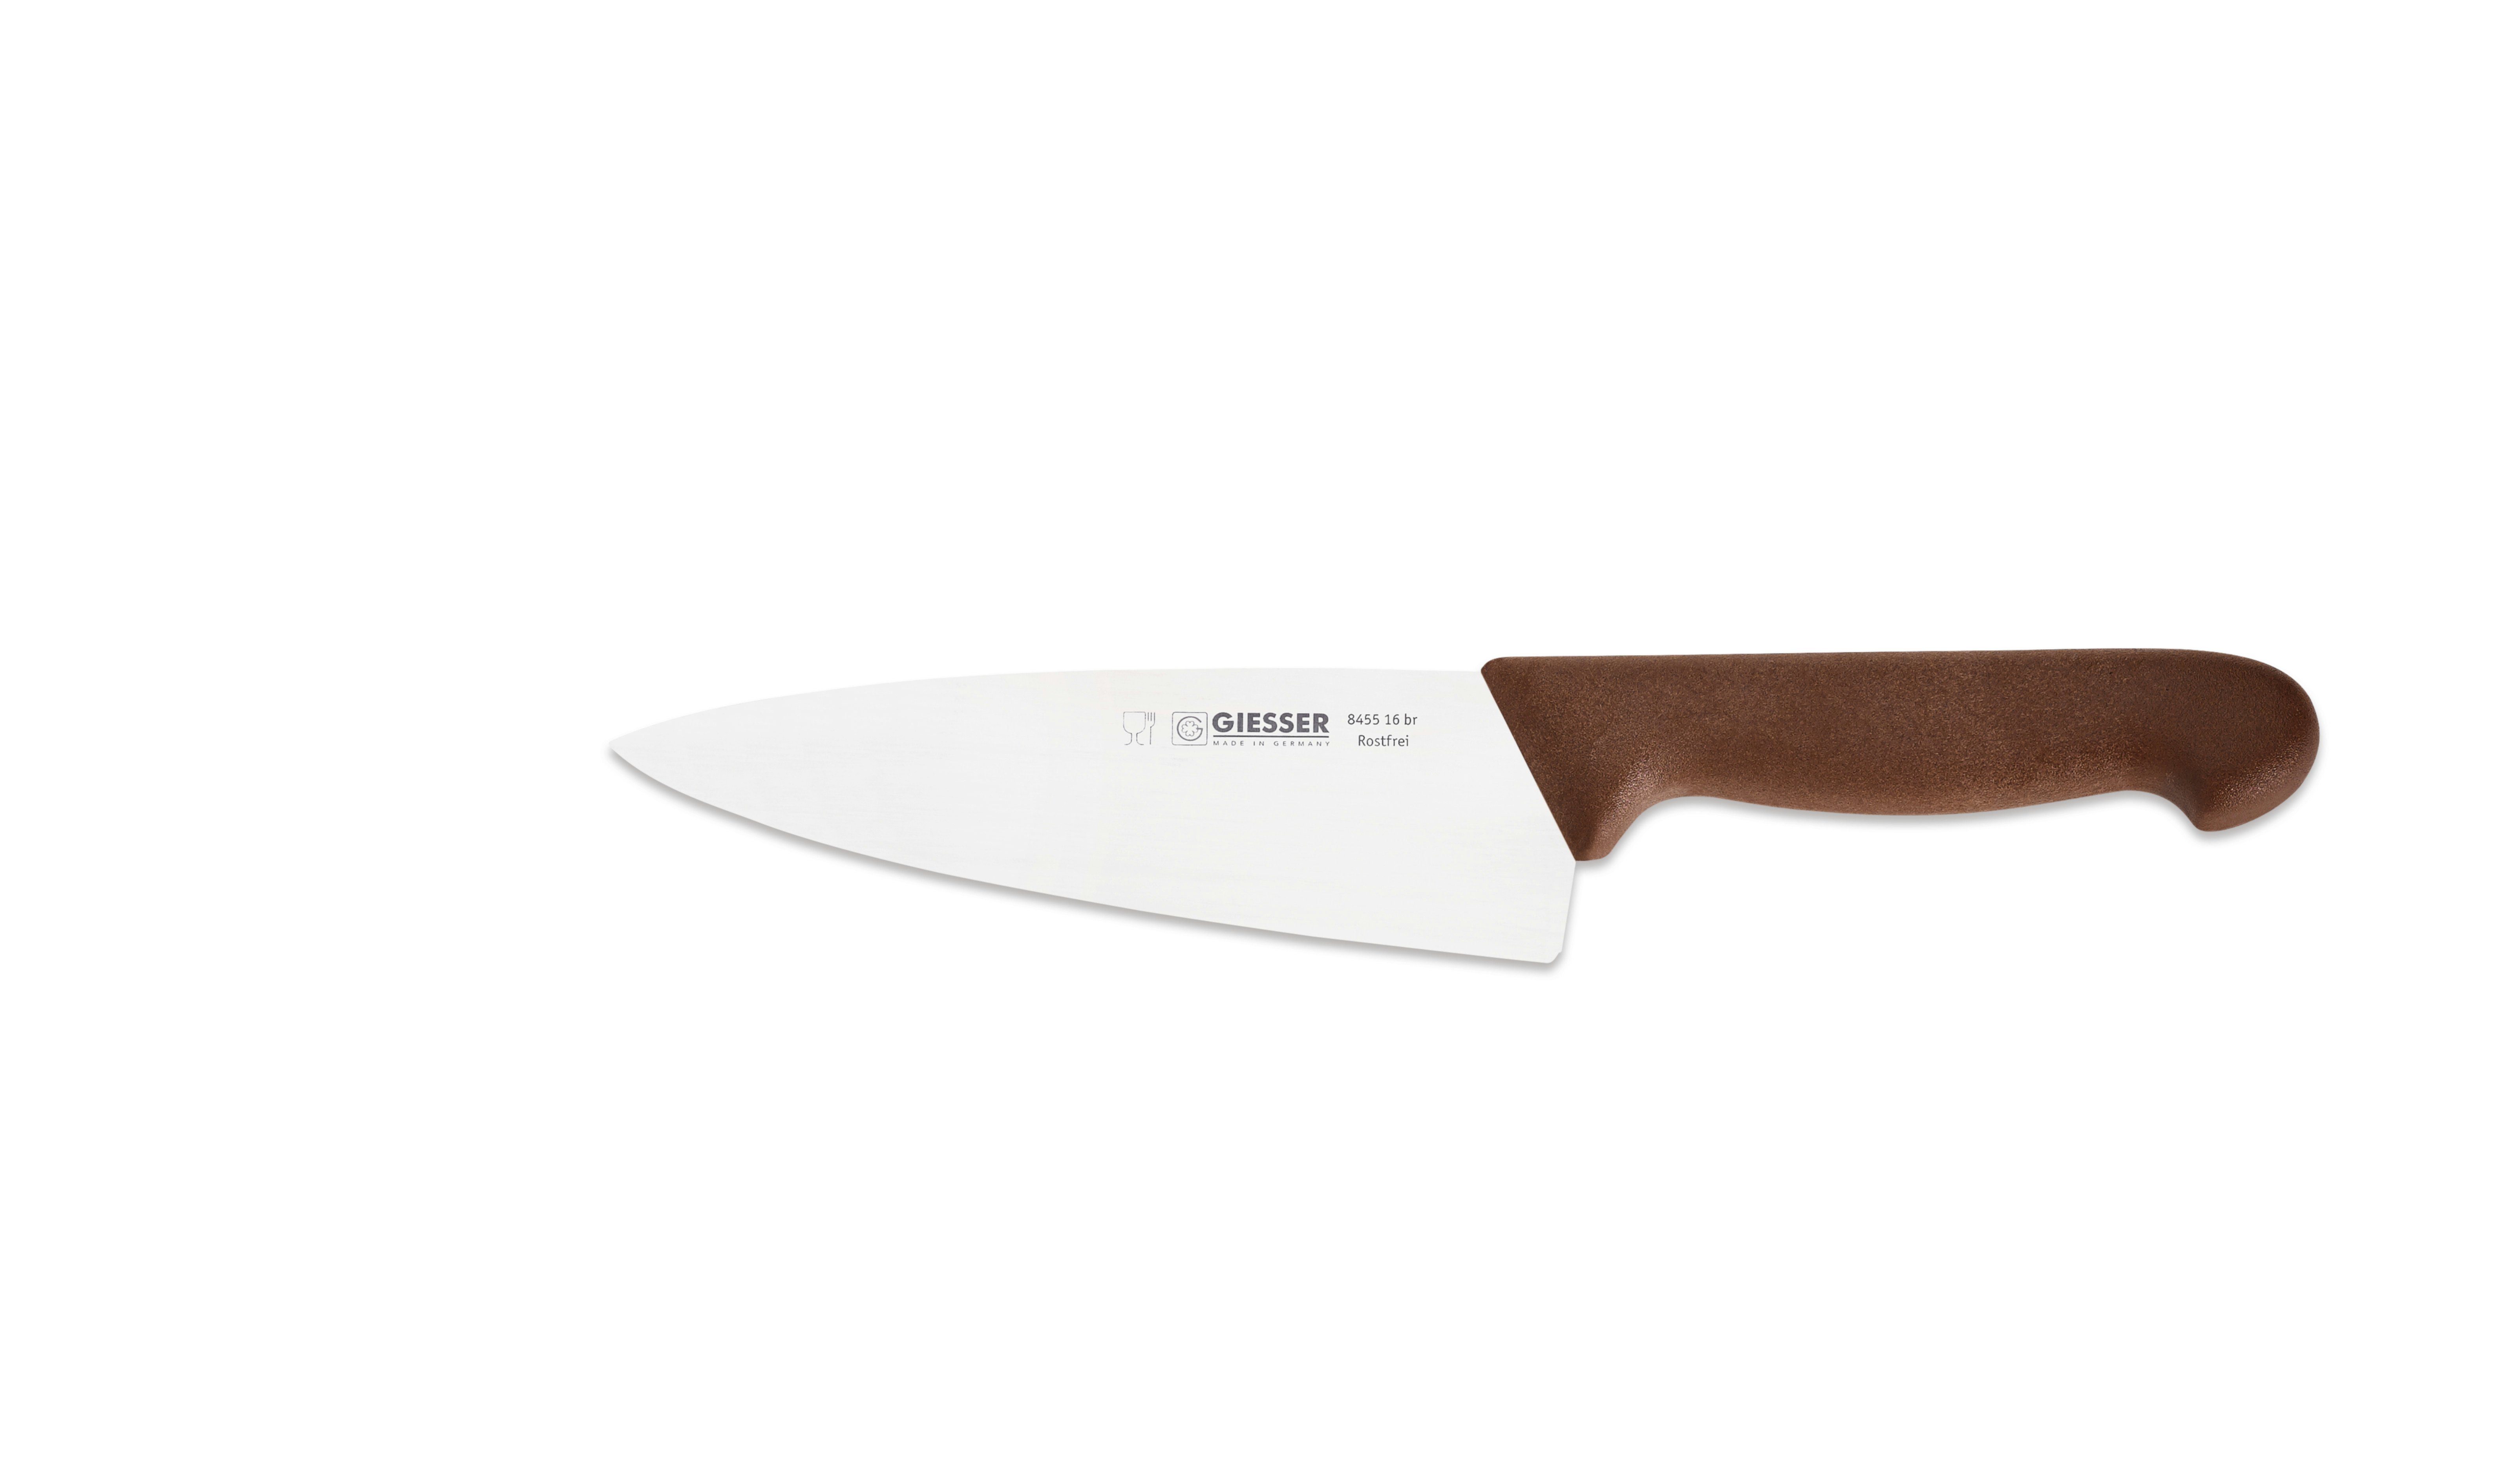 Giesser Messer Kochmesser Küchenmesser breit 8455, Rostfrei, breite Form, scharf, Handabzug, Ideal für jede Küche braun | Kochmesser